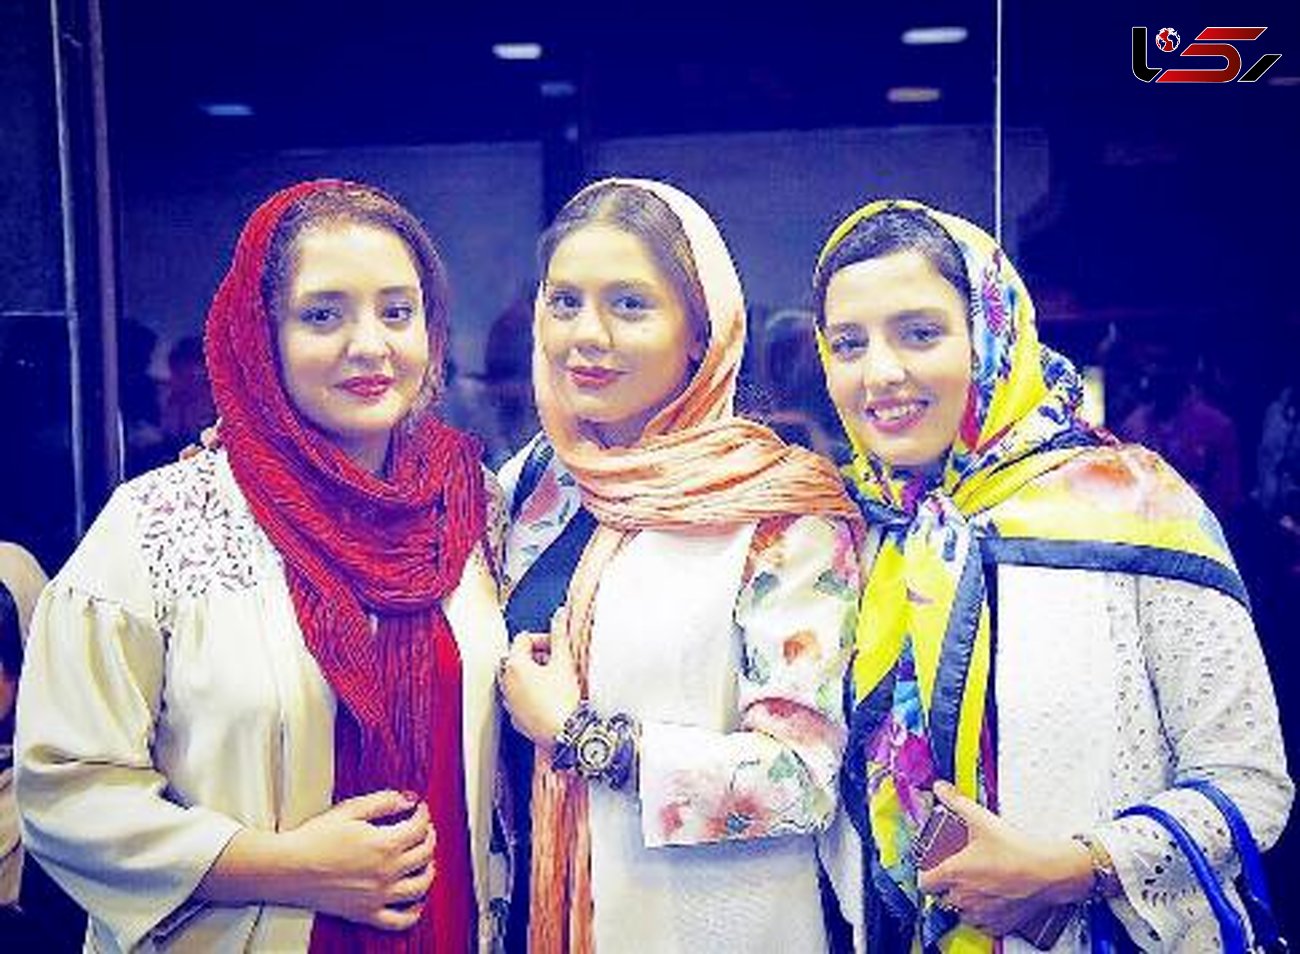 نرگس محمدی و خواهرش در کنار خانم بازیگر +عکس